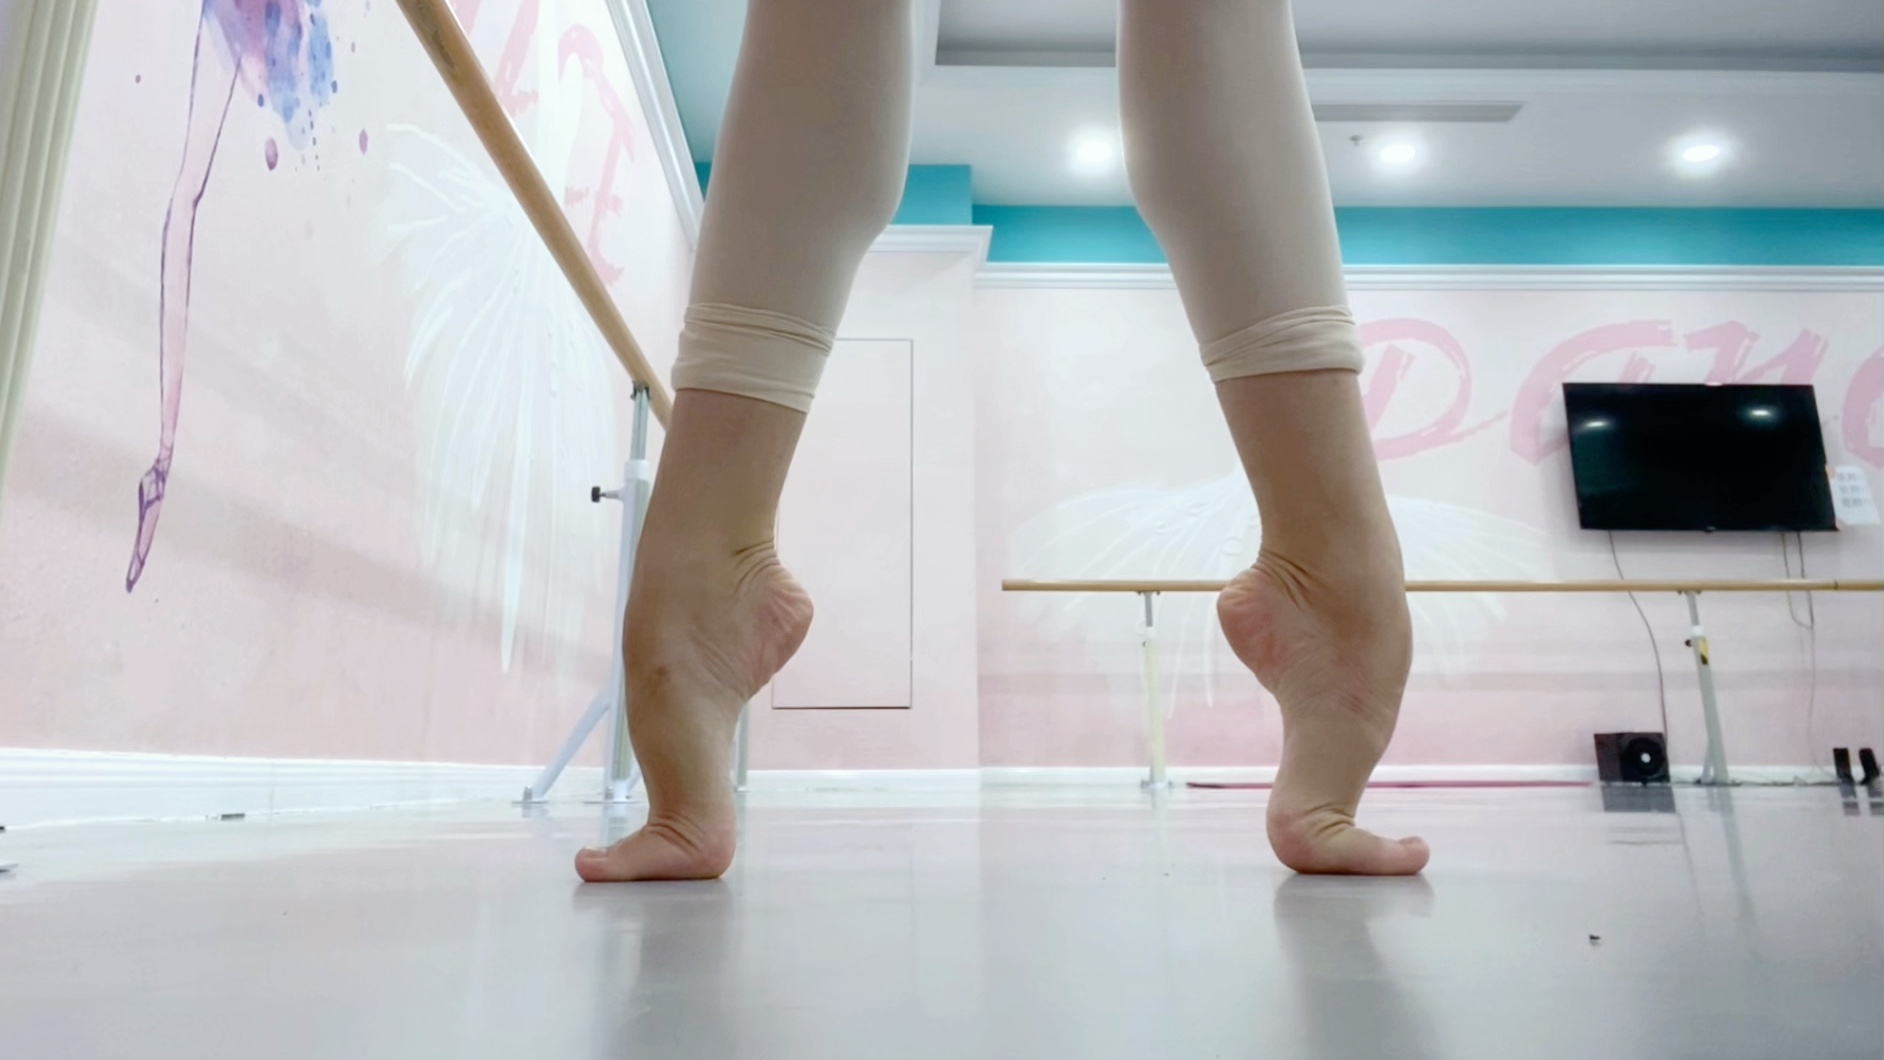 芭蕾舞最弯的脚背图片